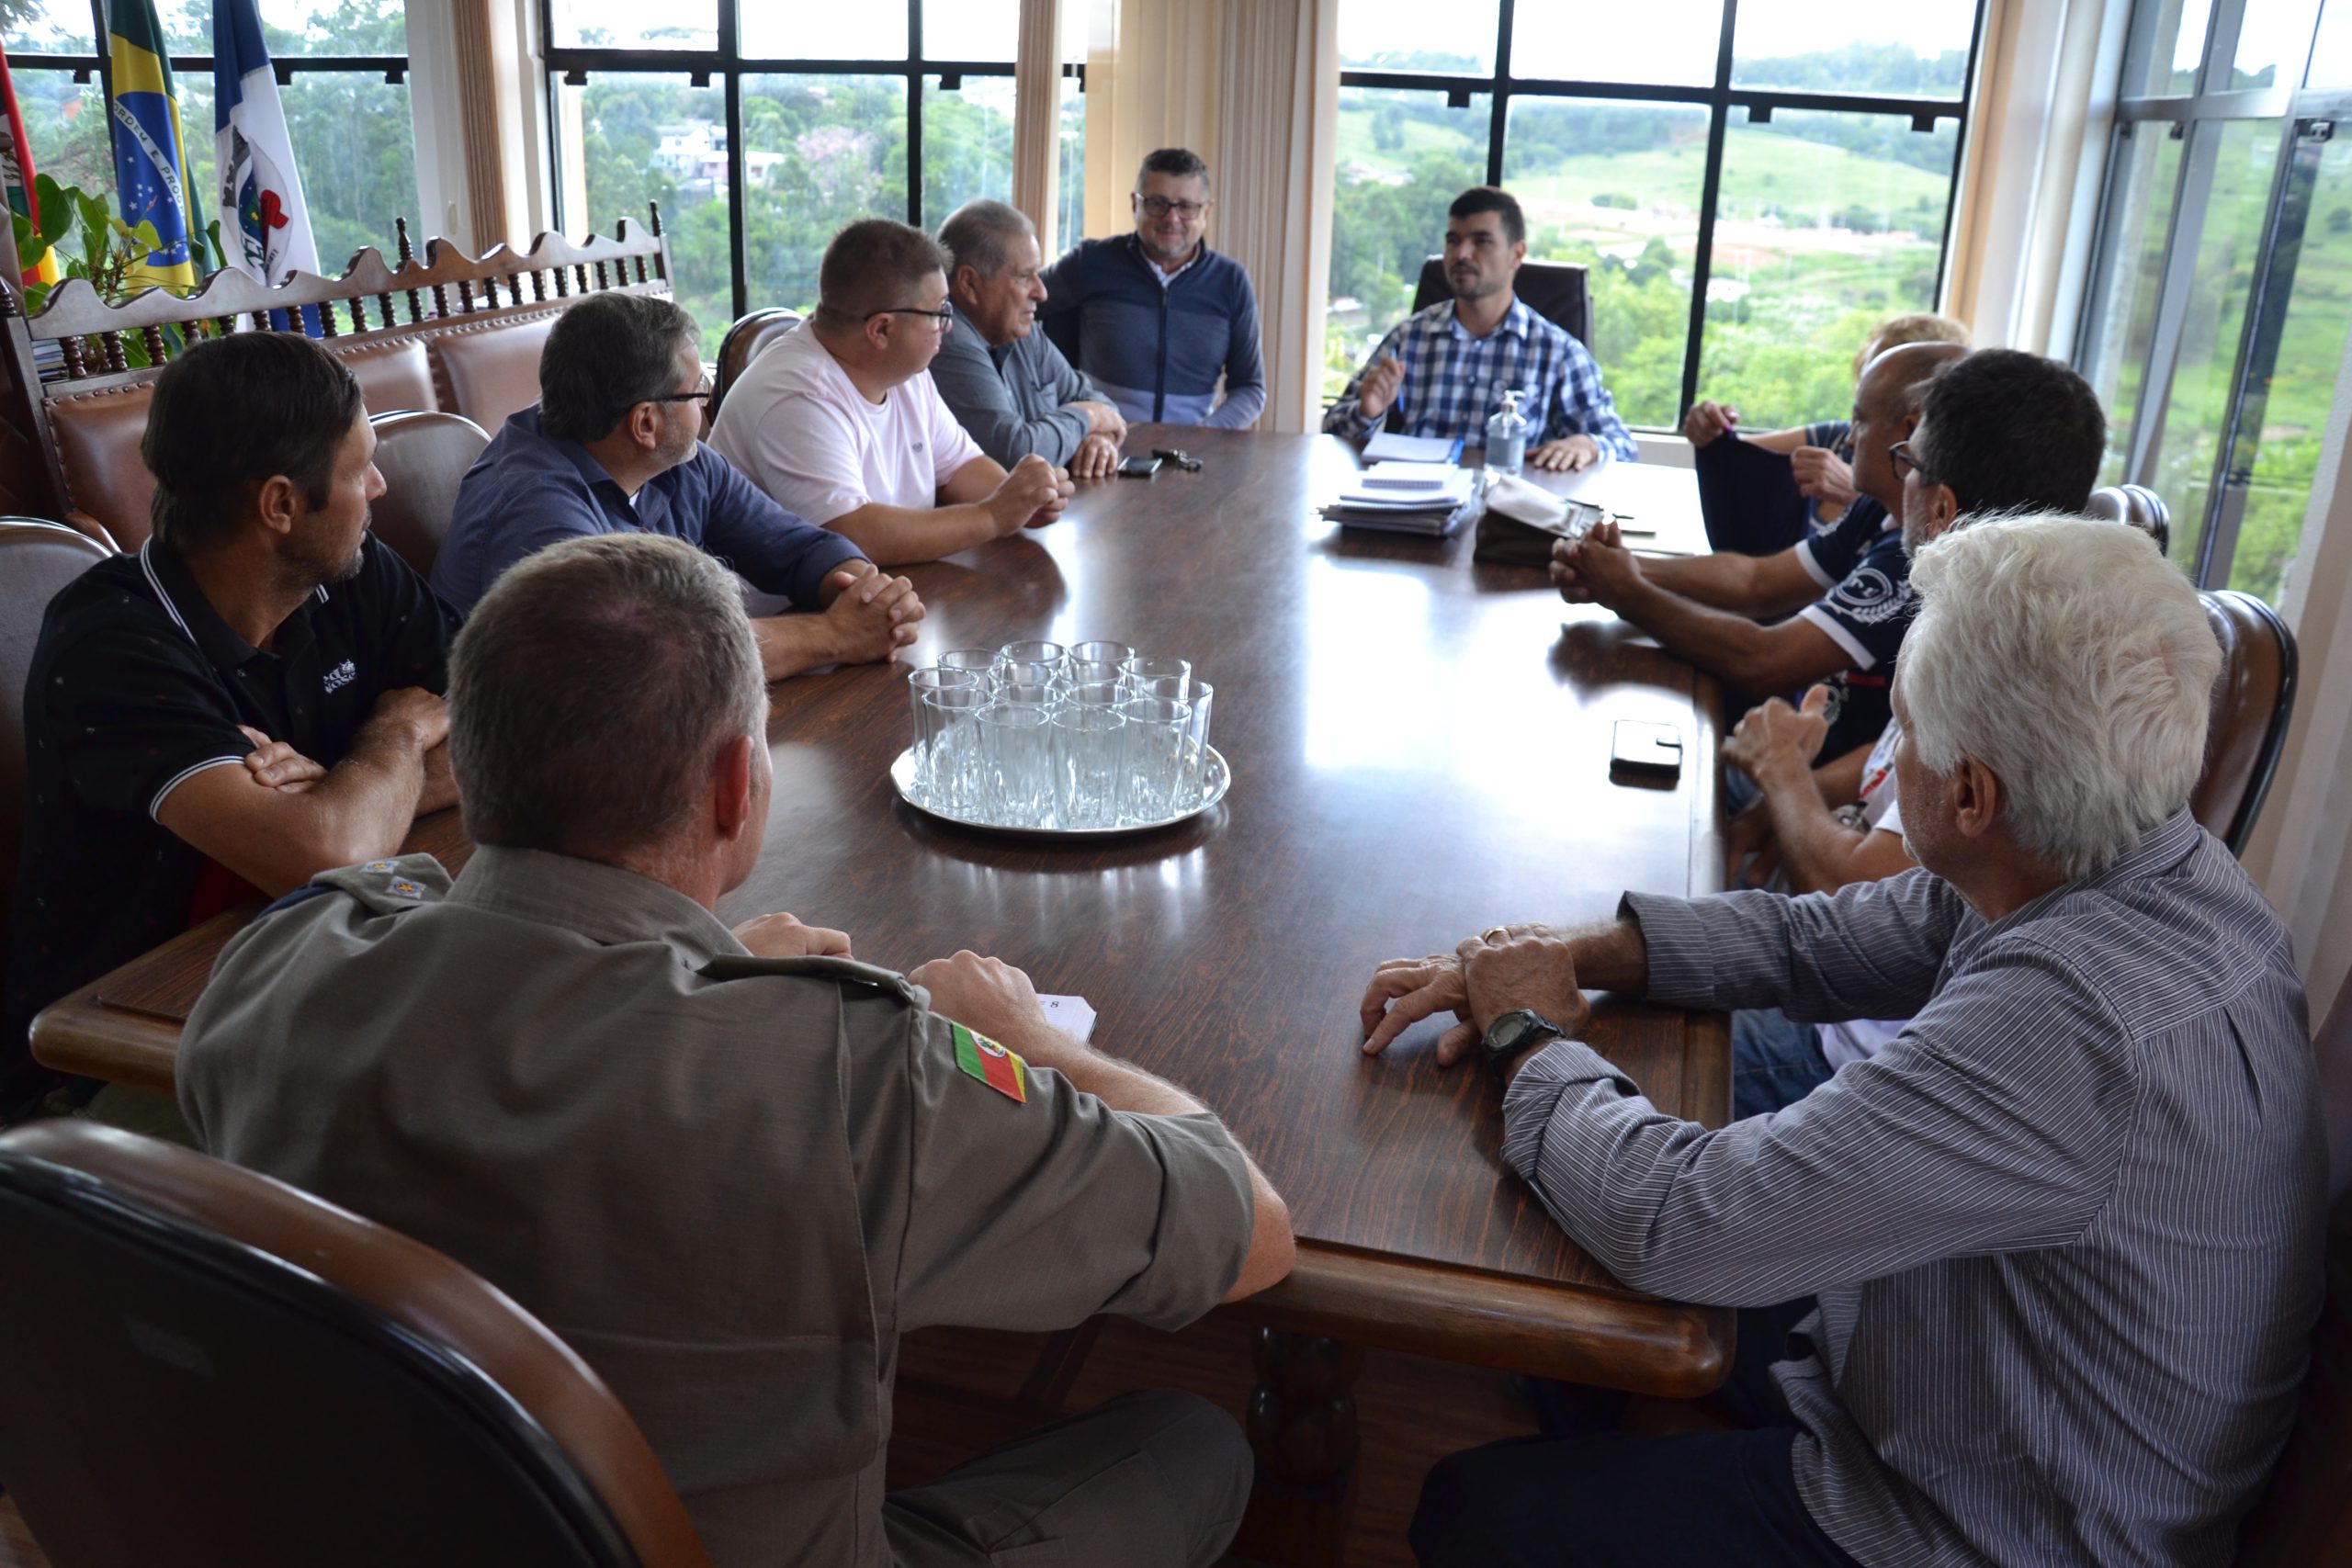 Polícia Civil, Brigada Militar, Executivo, Legislativo e moradores realizam reunião para traçar ações em conjunto contra abigeato